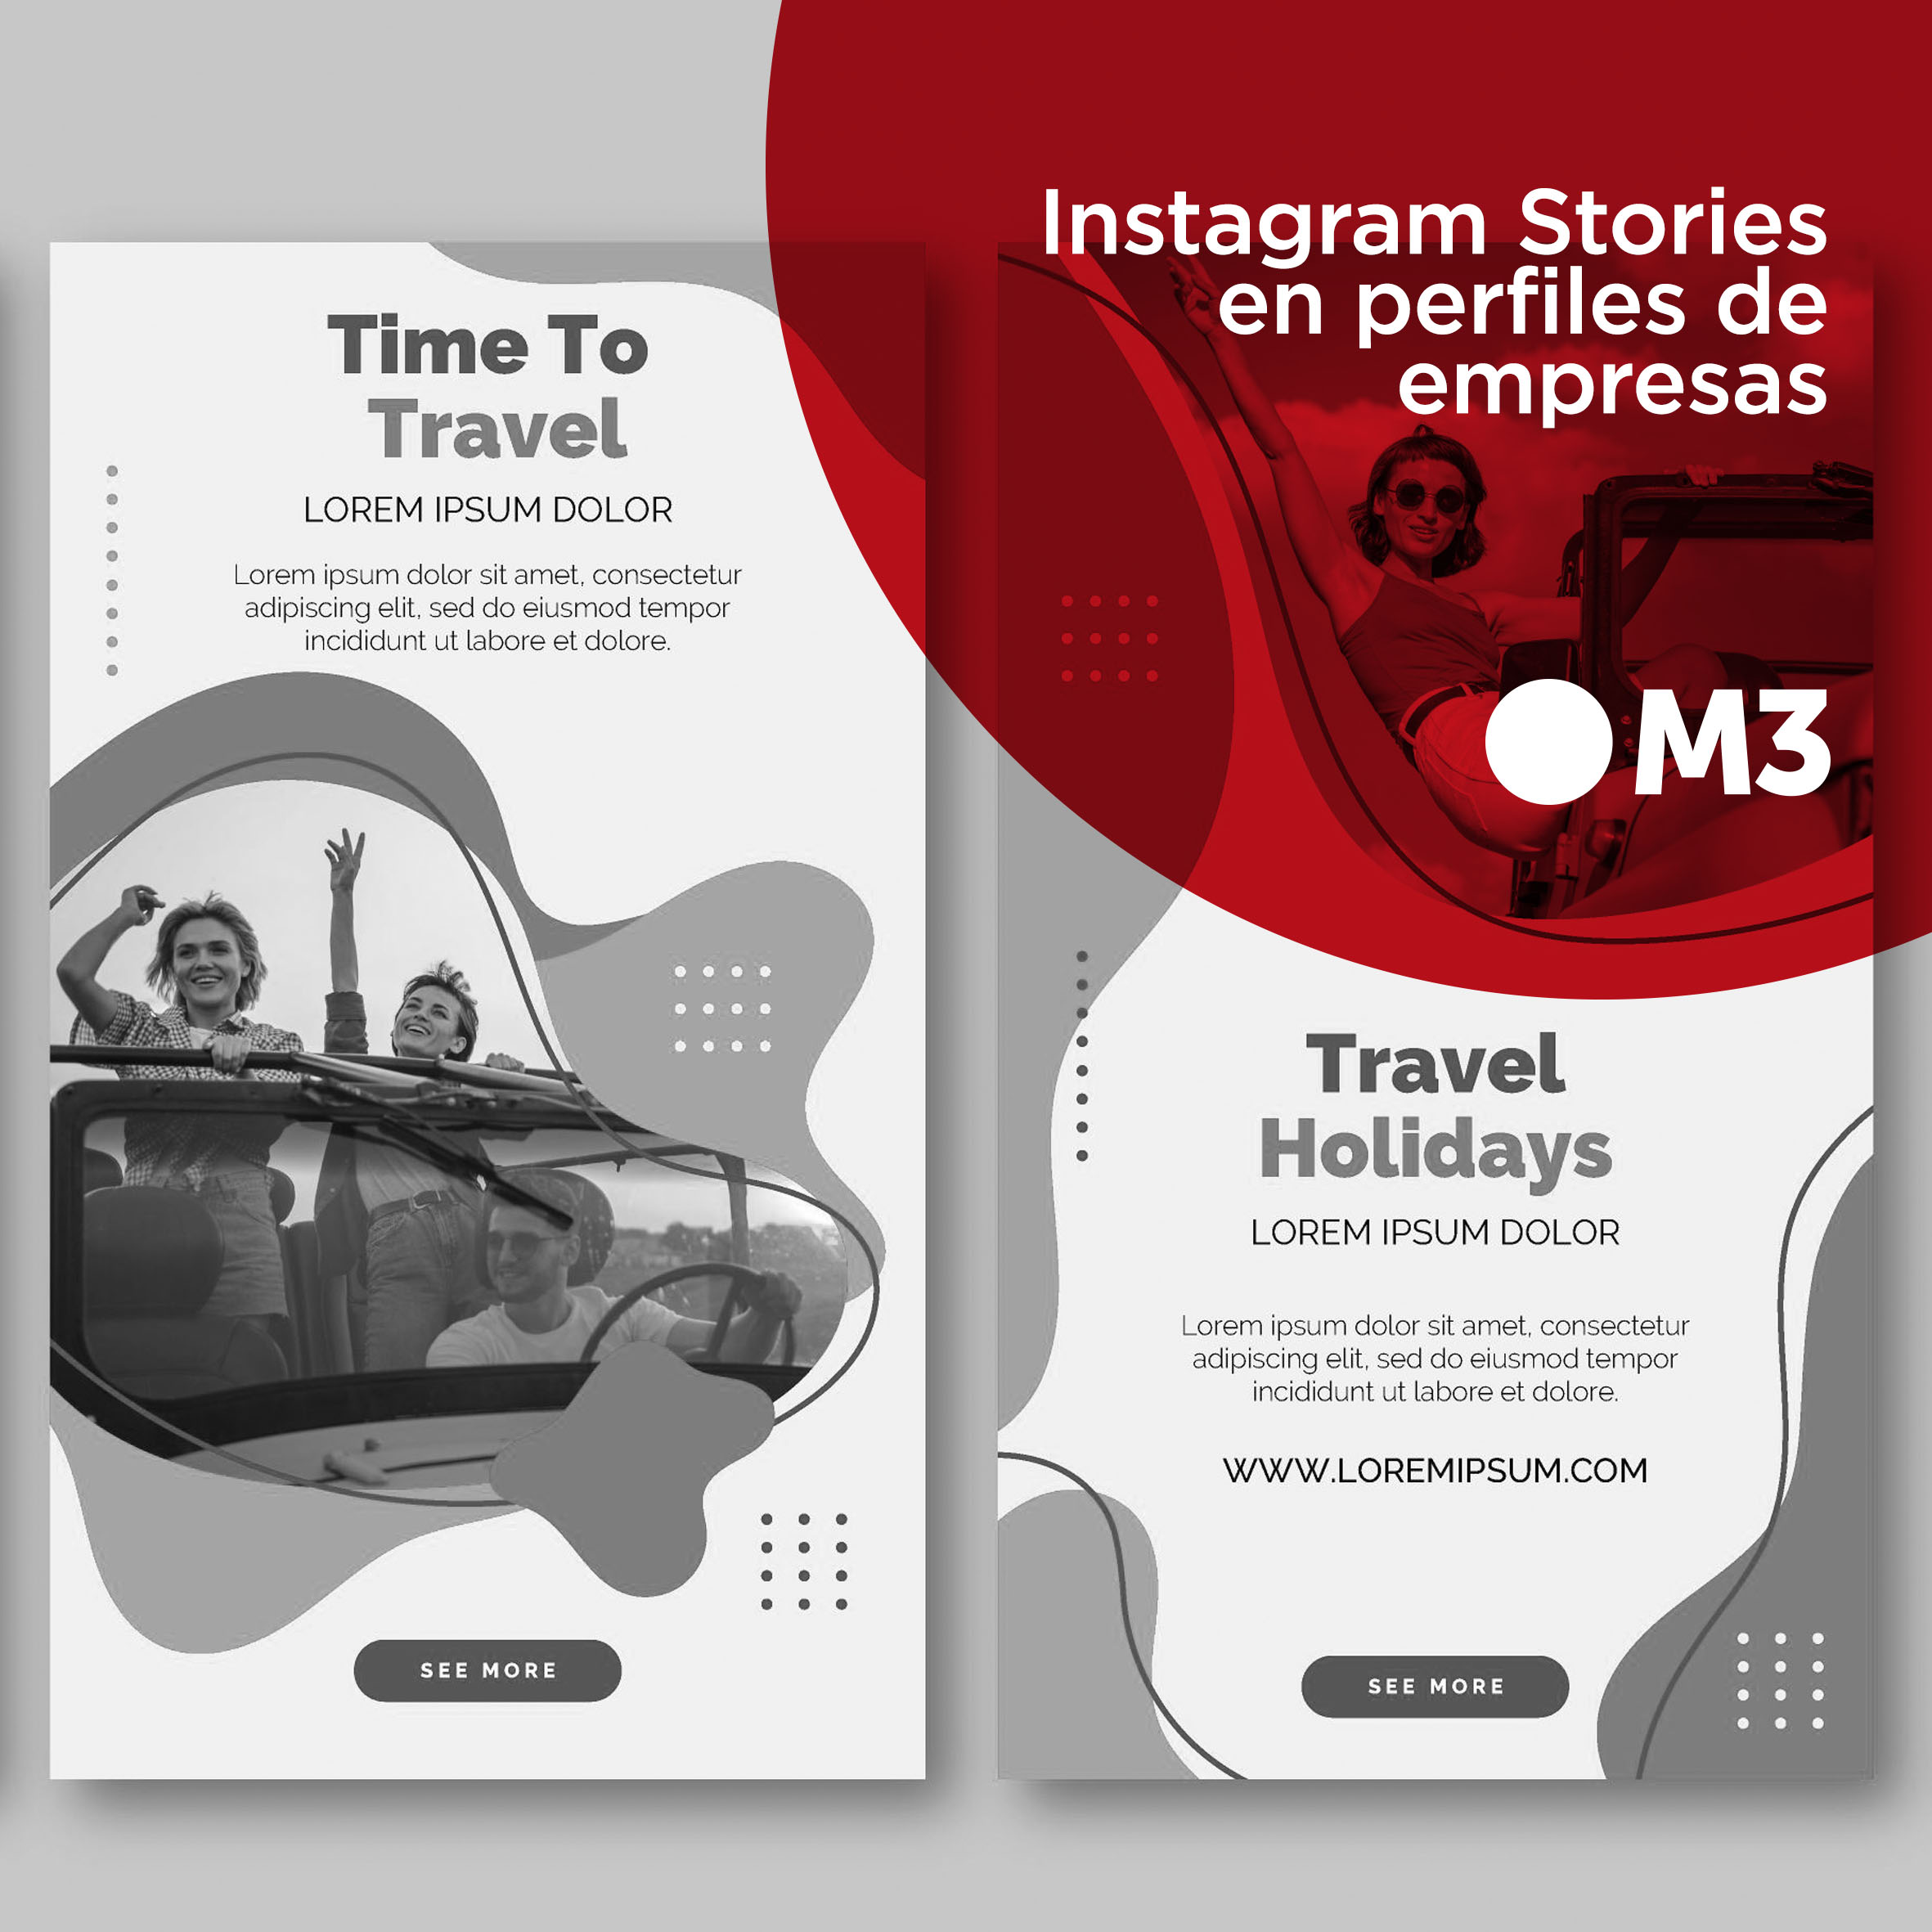 Instagram Stories en perfiles de empresas